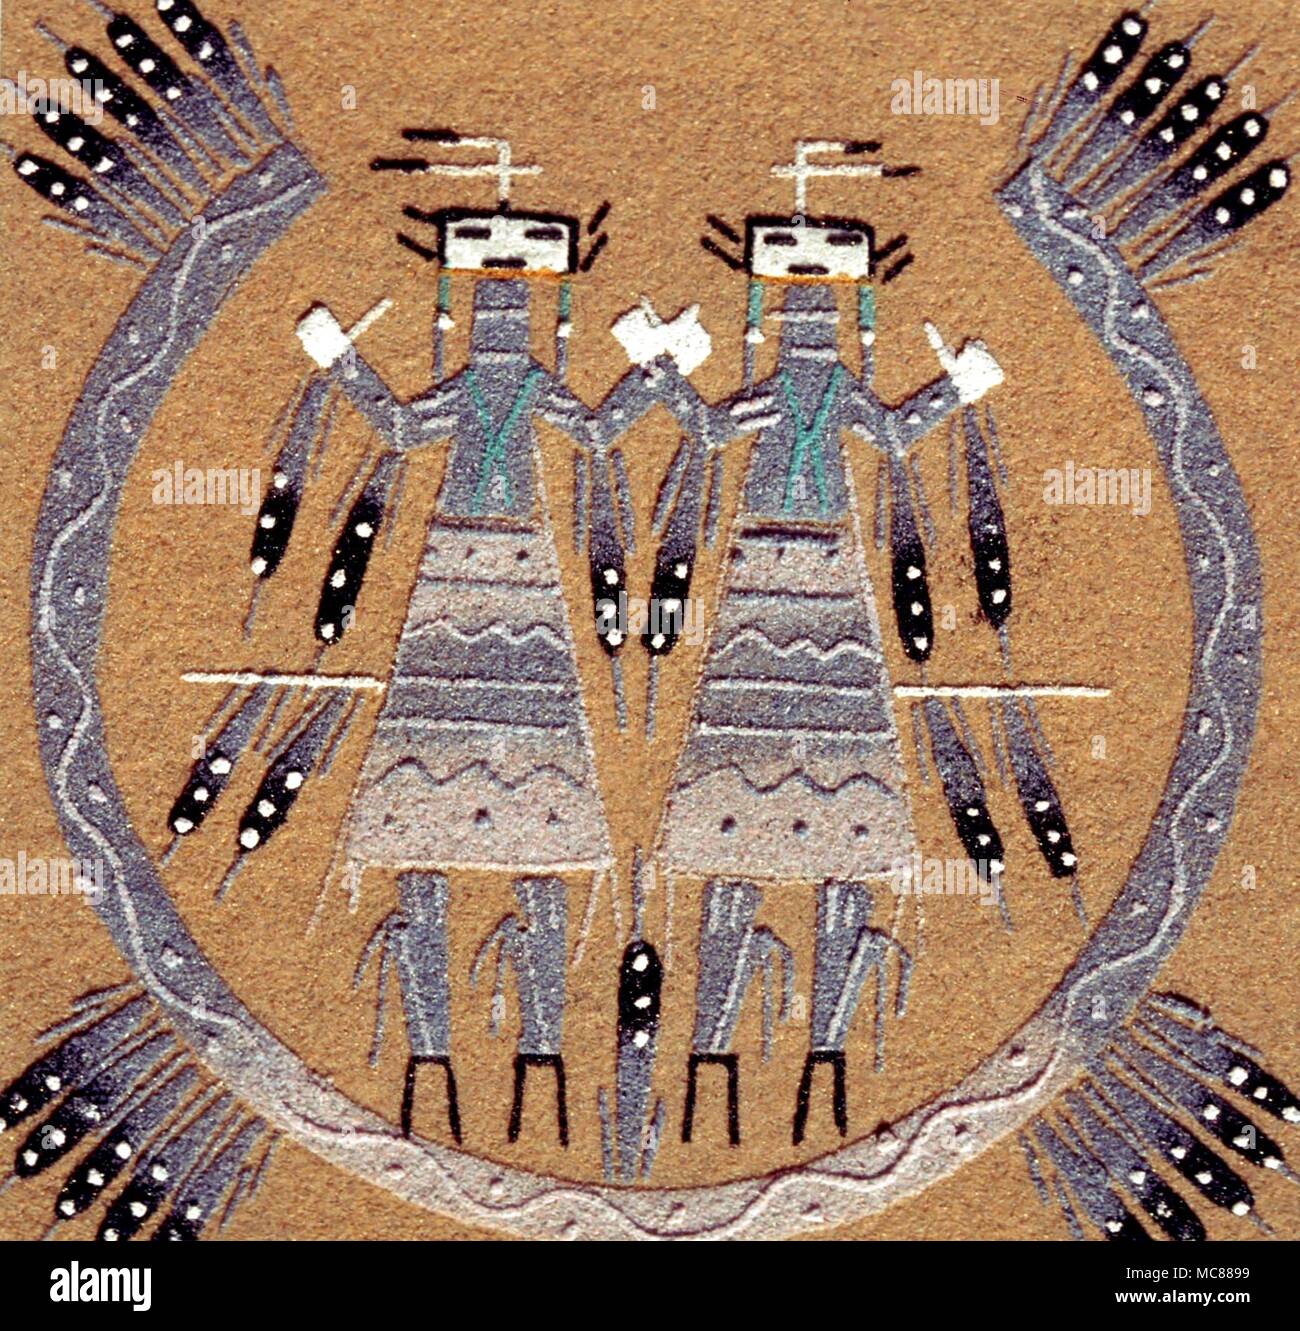 Les Indiens de l'Amérique du Nord - la peinture de sable Navajo - un rendu moderne d'un thème traditionnel Banque D'Images